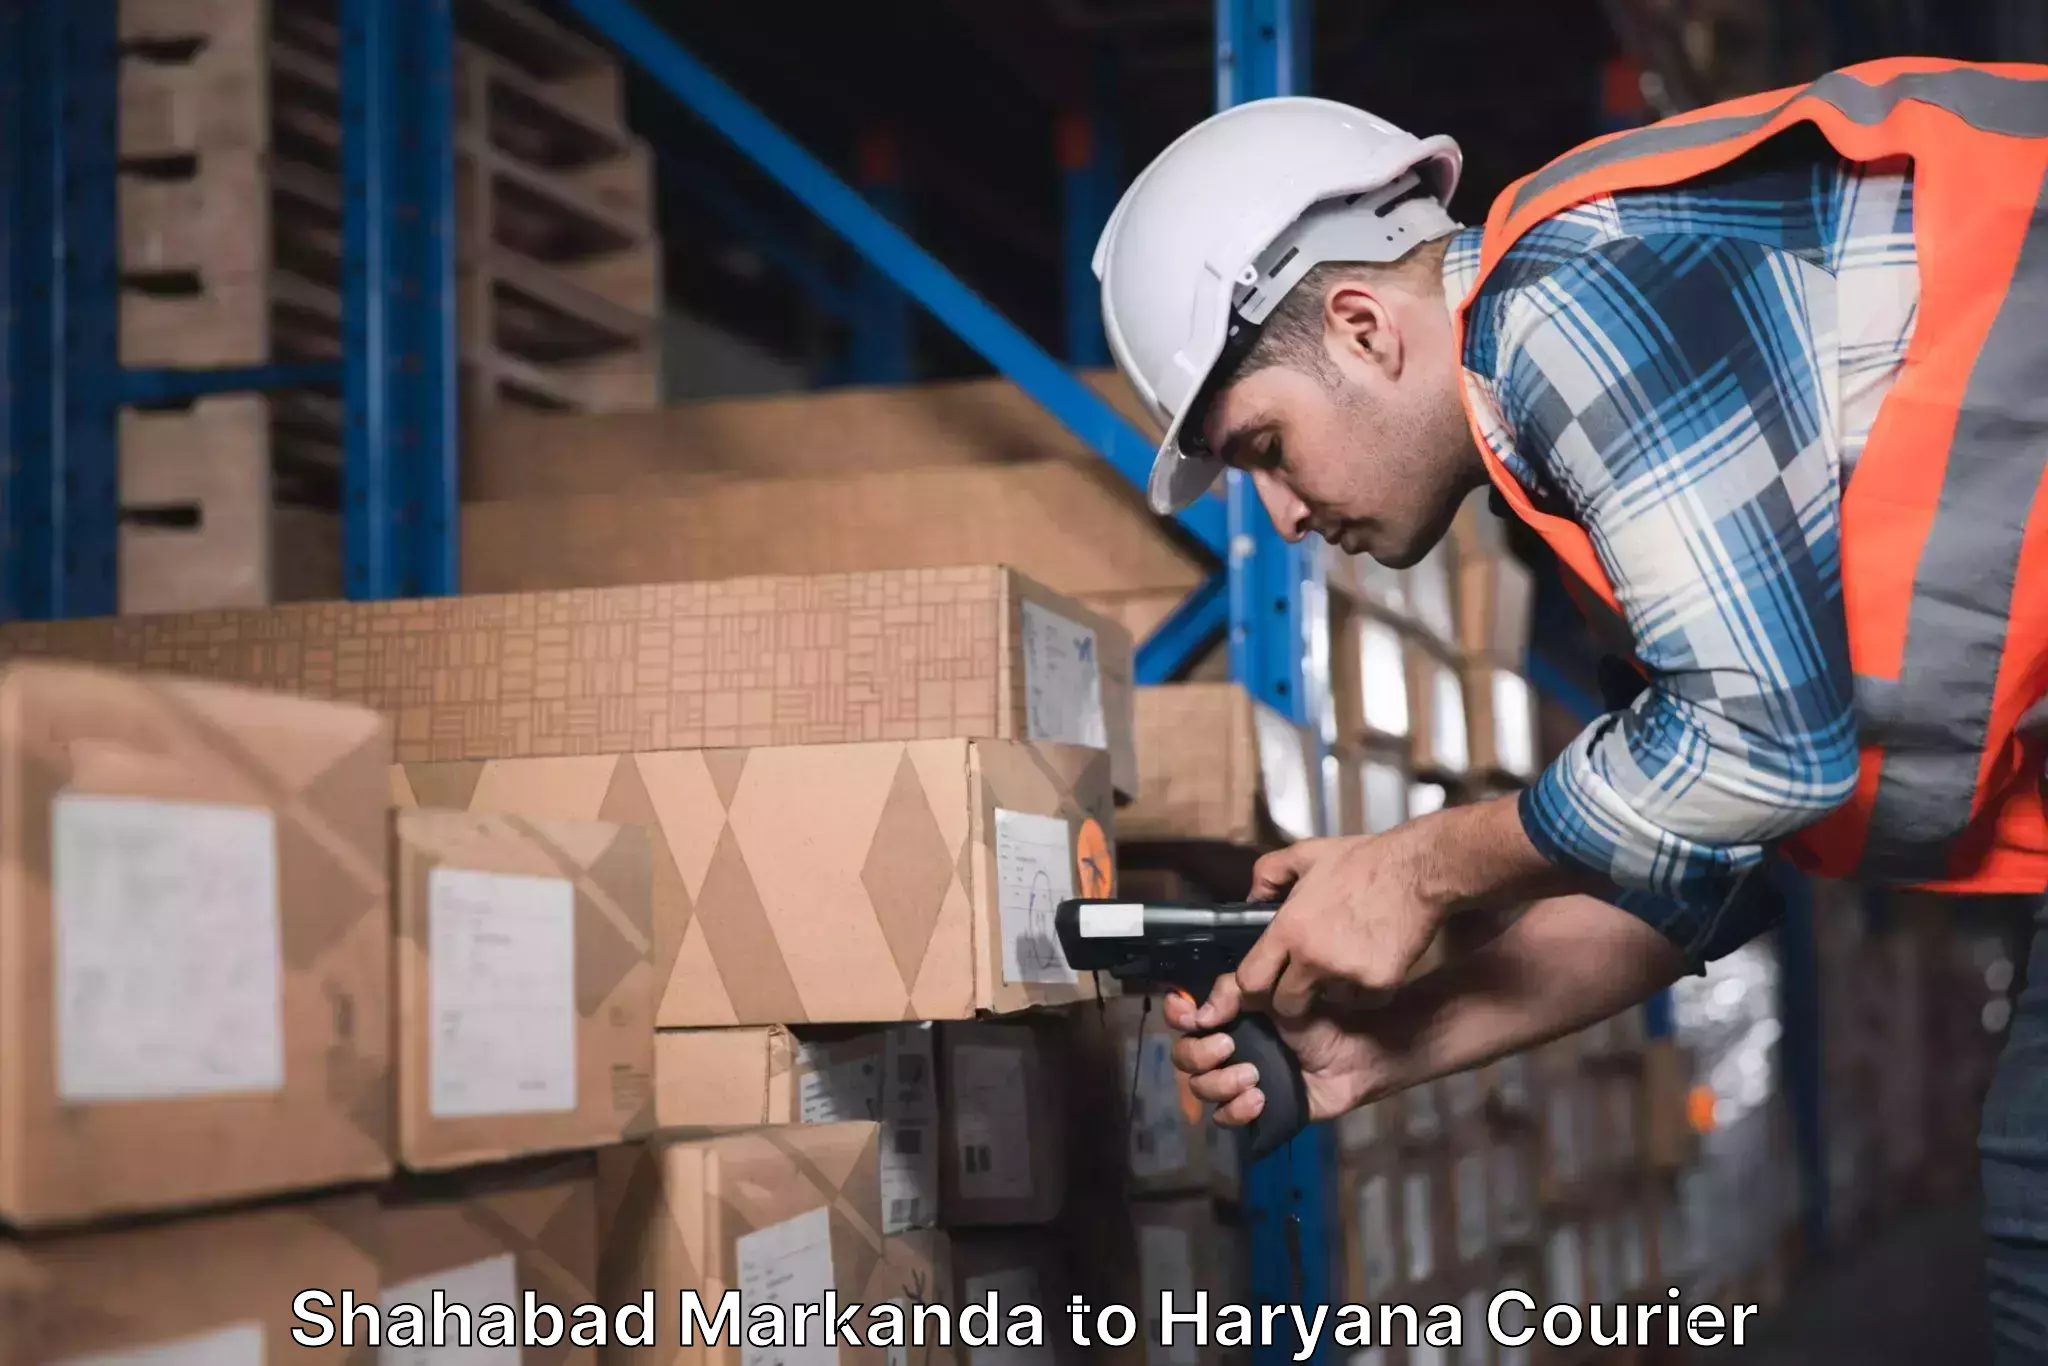 Premium courier services Shahabad Markanda to Haryana